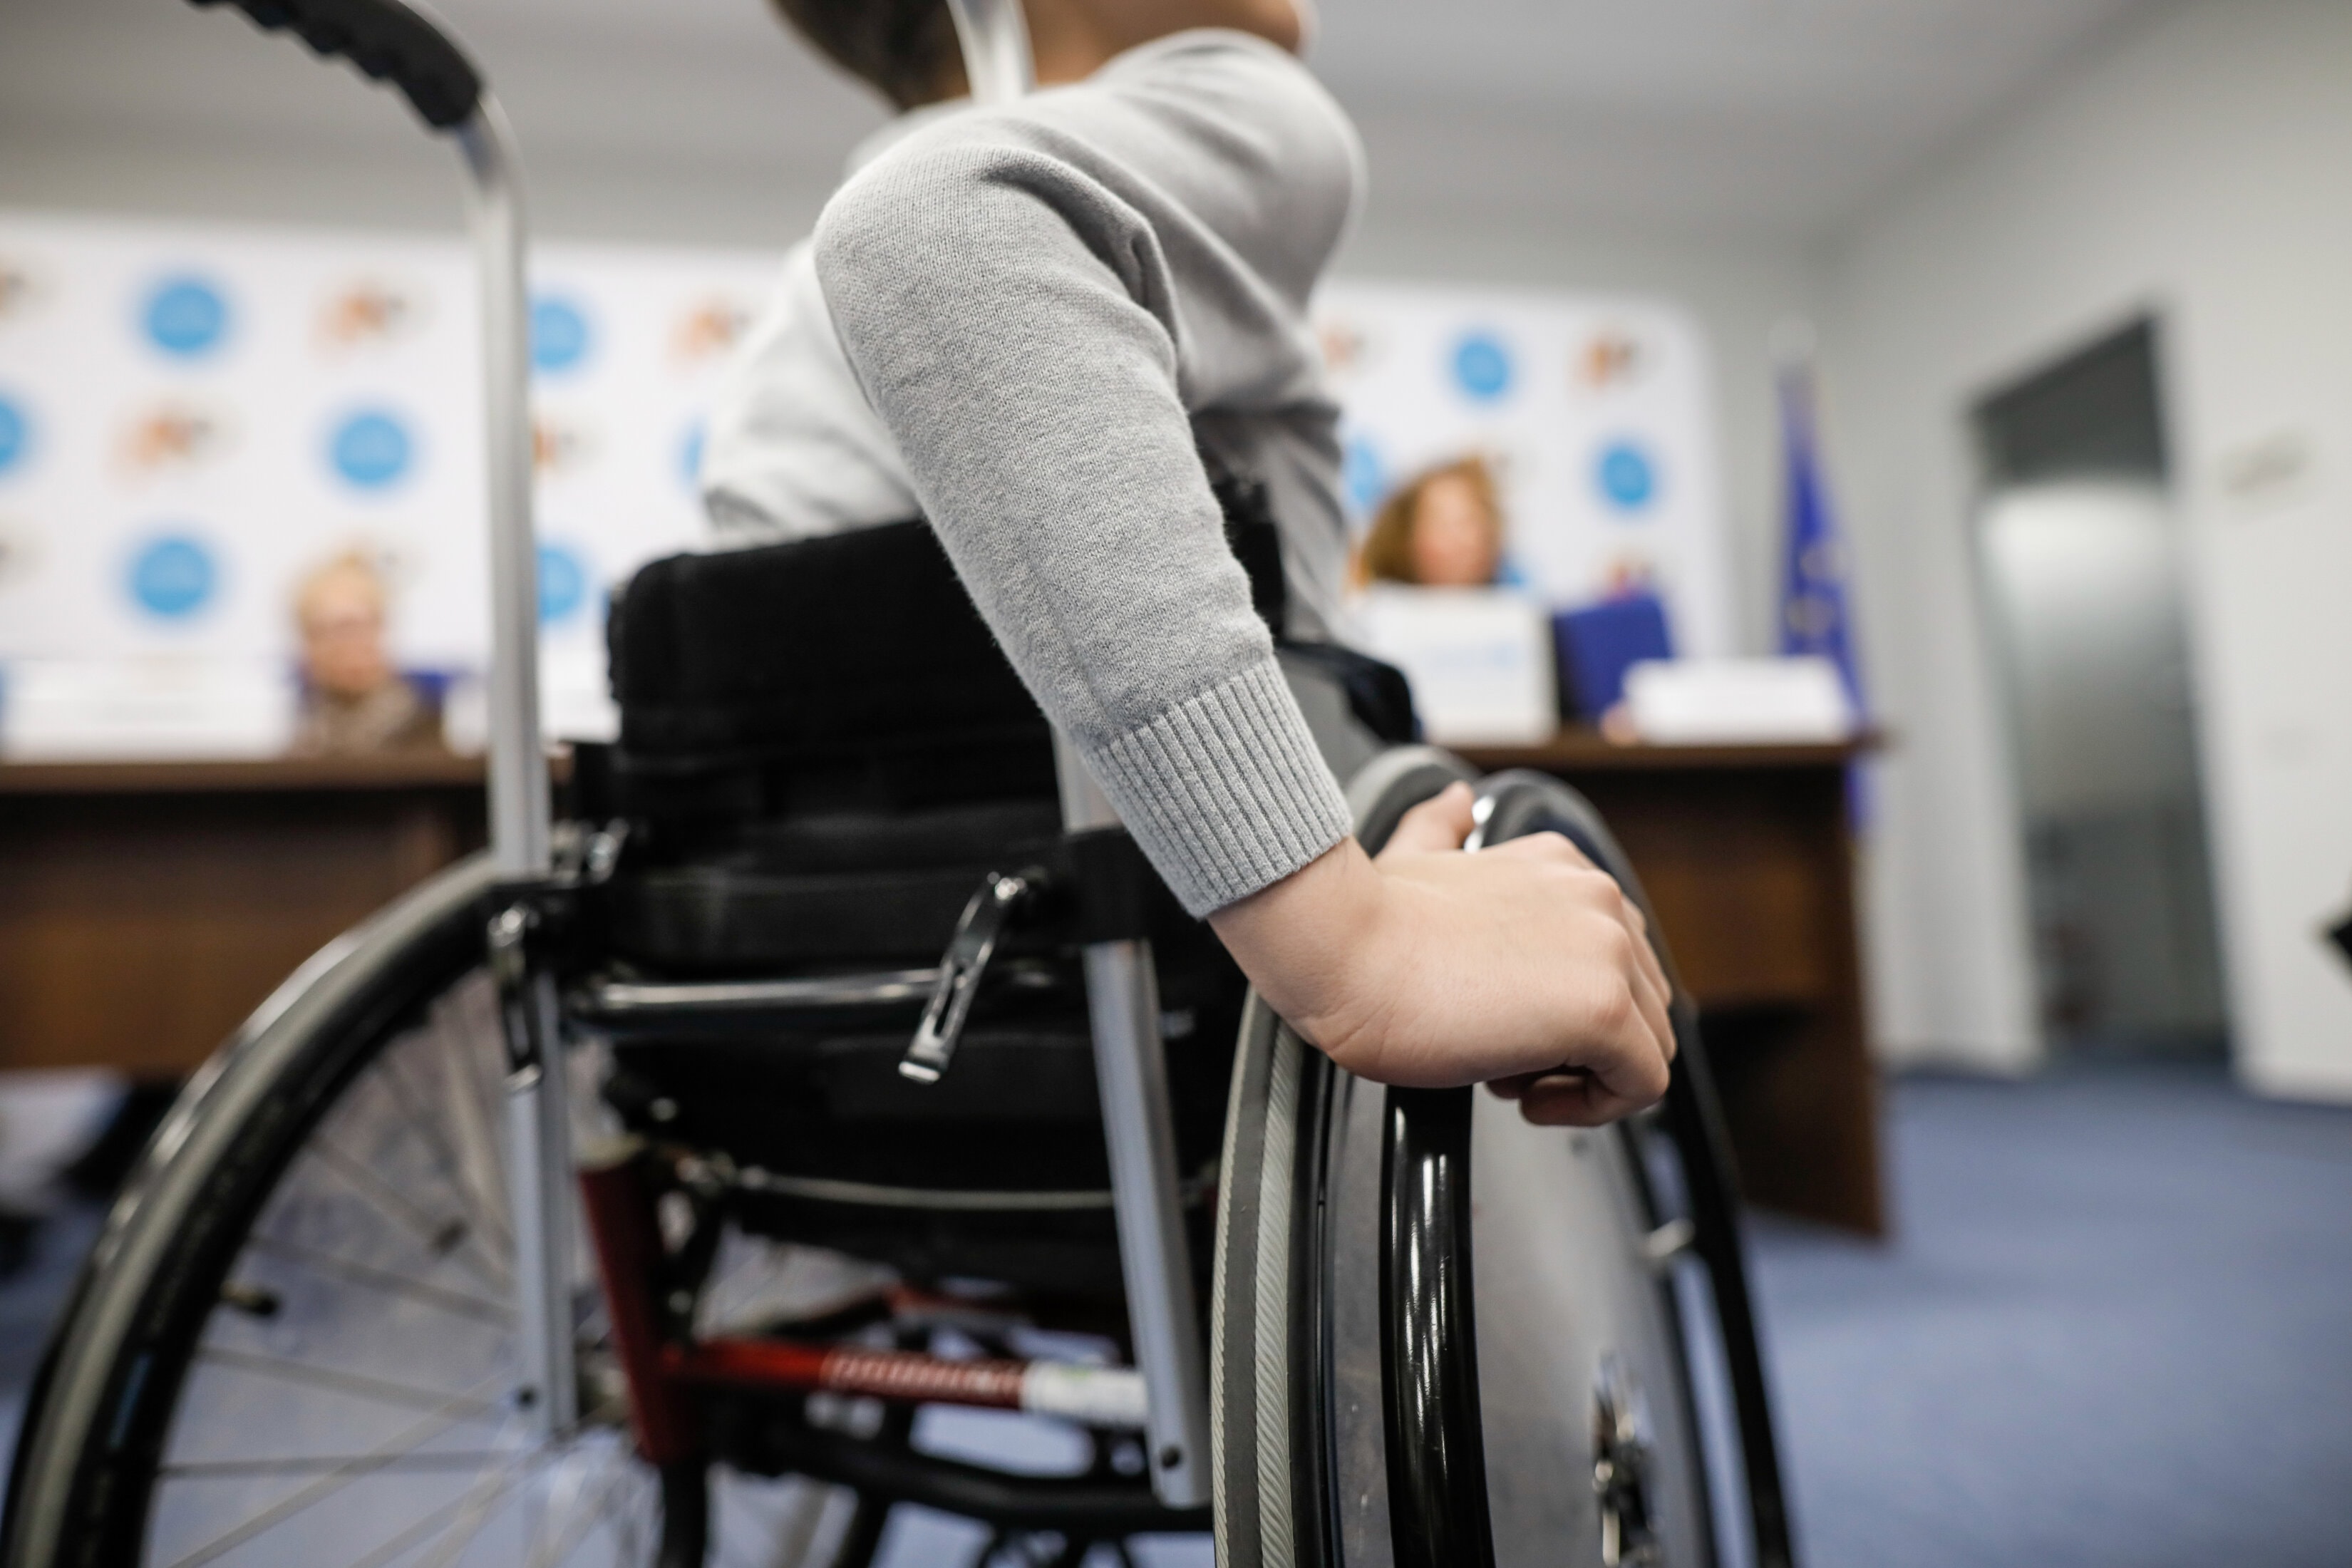 Neuf personnes paralysées ont pu remarcher après une stimulation électrique délivrée dans leur colonne vertébrale.&nbsp;© MoiraM, Adobe Stock